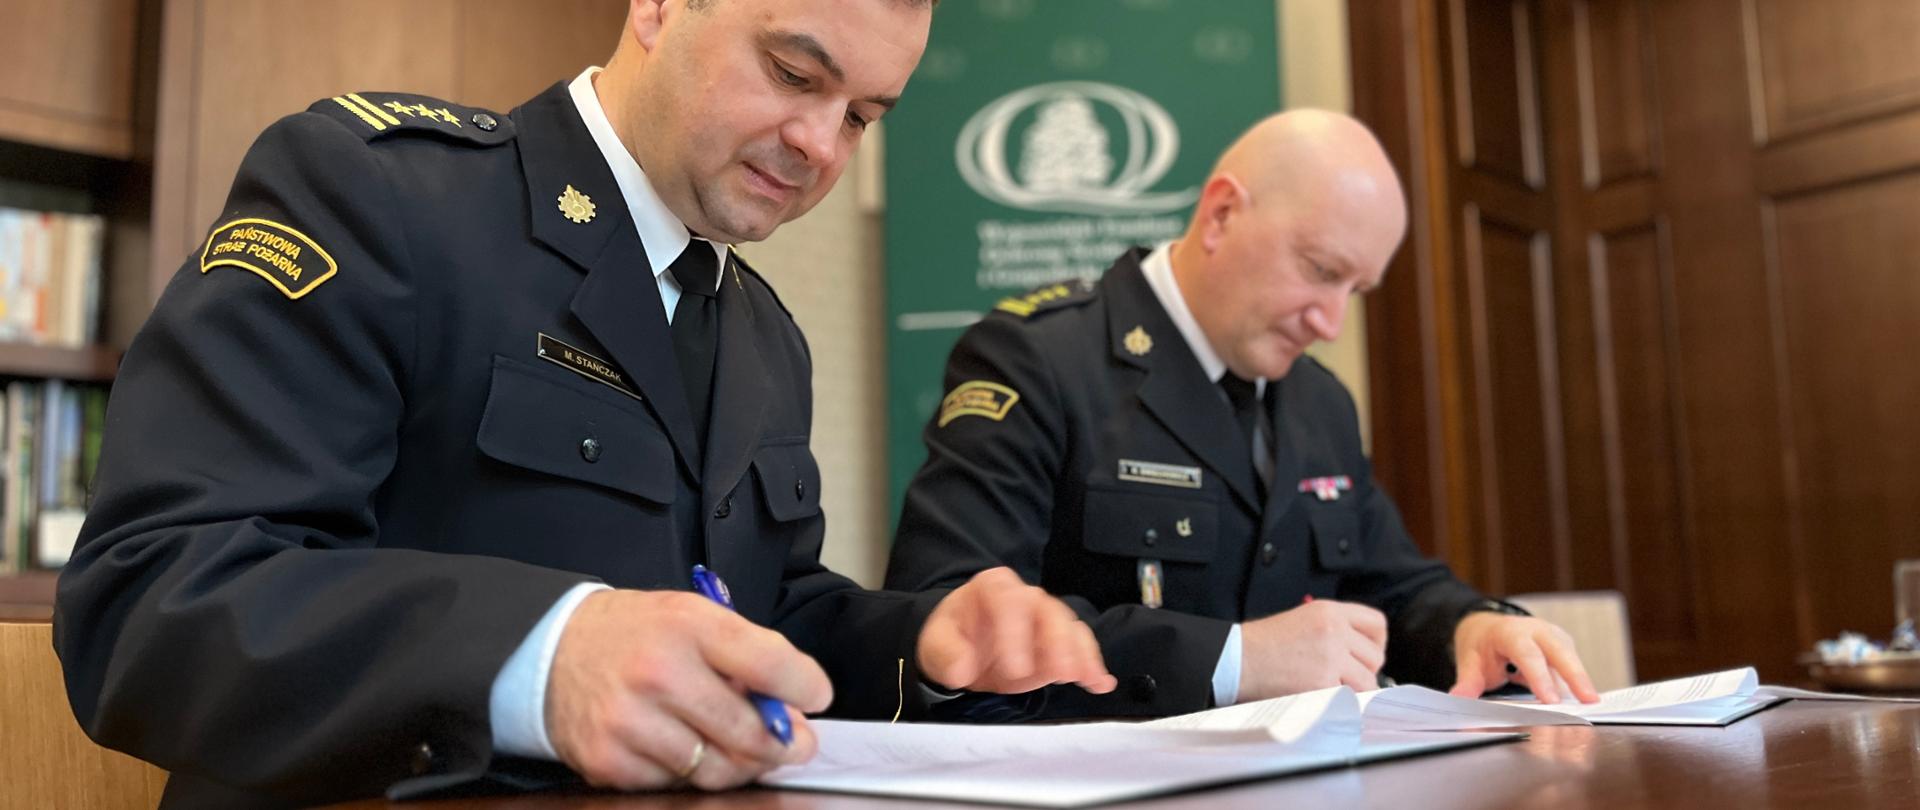 Dwóch strażaków, w mundurach wyjściowych, przy stole podpisuje dokumenty. W tle wystrój gabinetu.